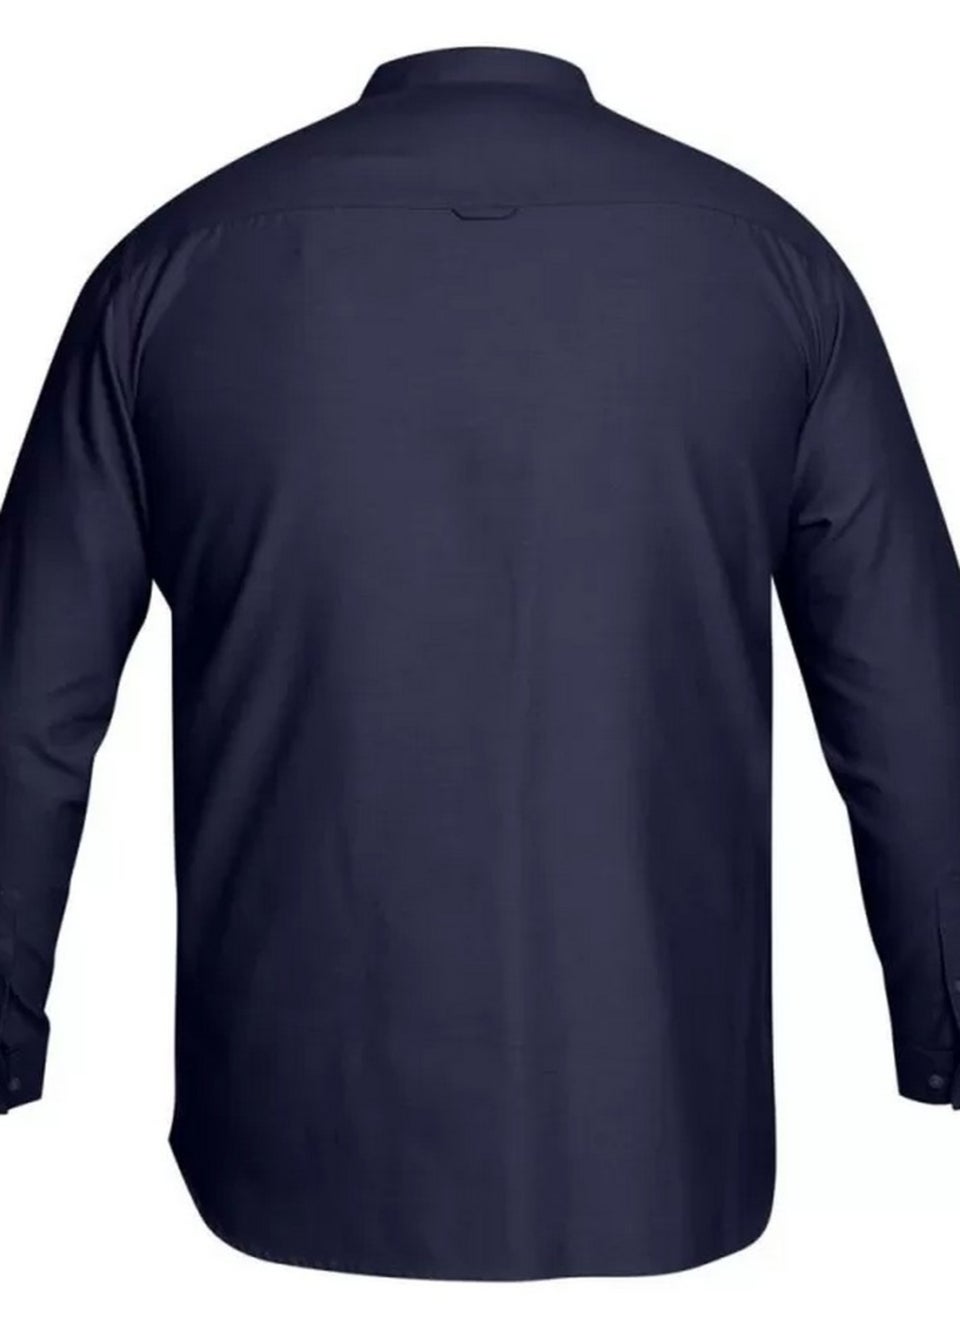 Duke Navy Richard Oxford Kingsize Long-Sleeved Shirt